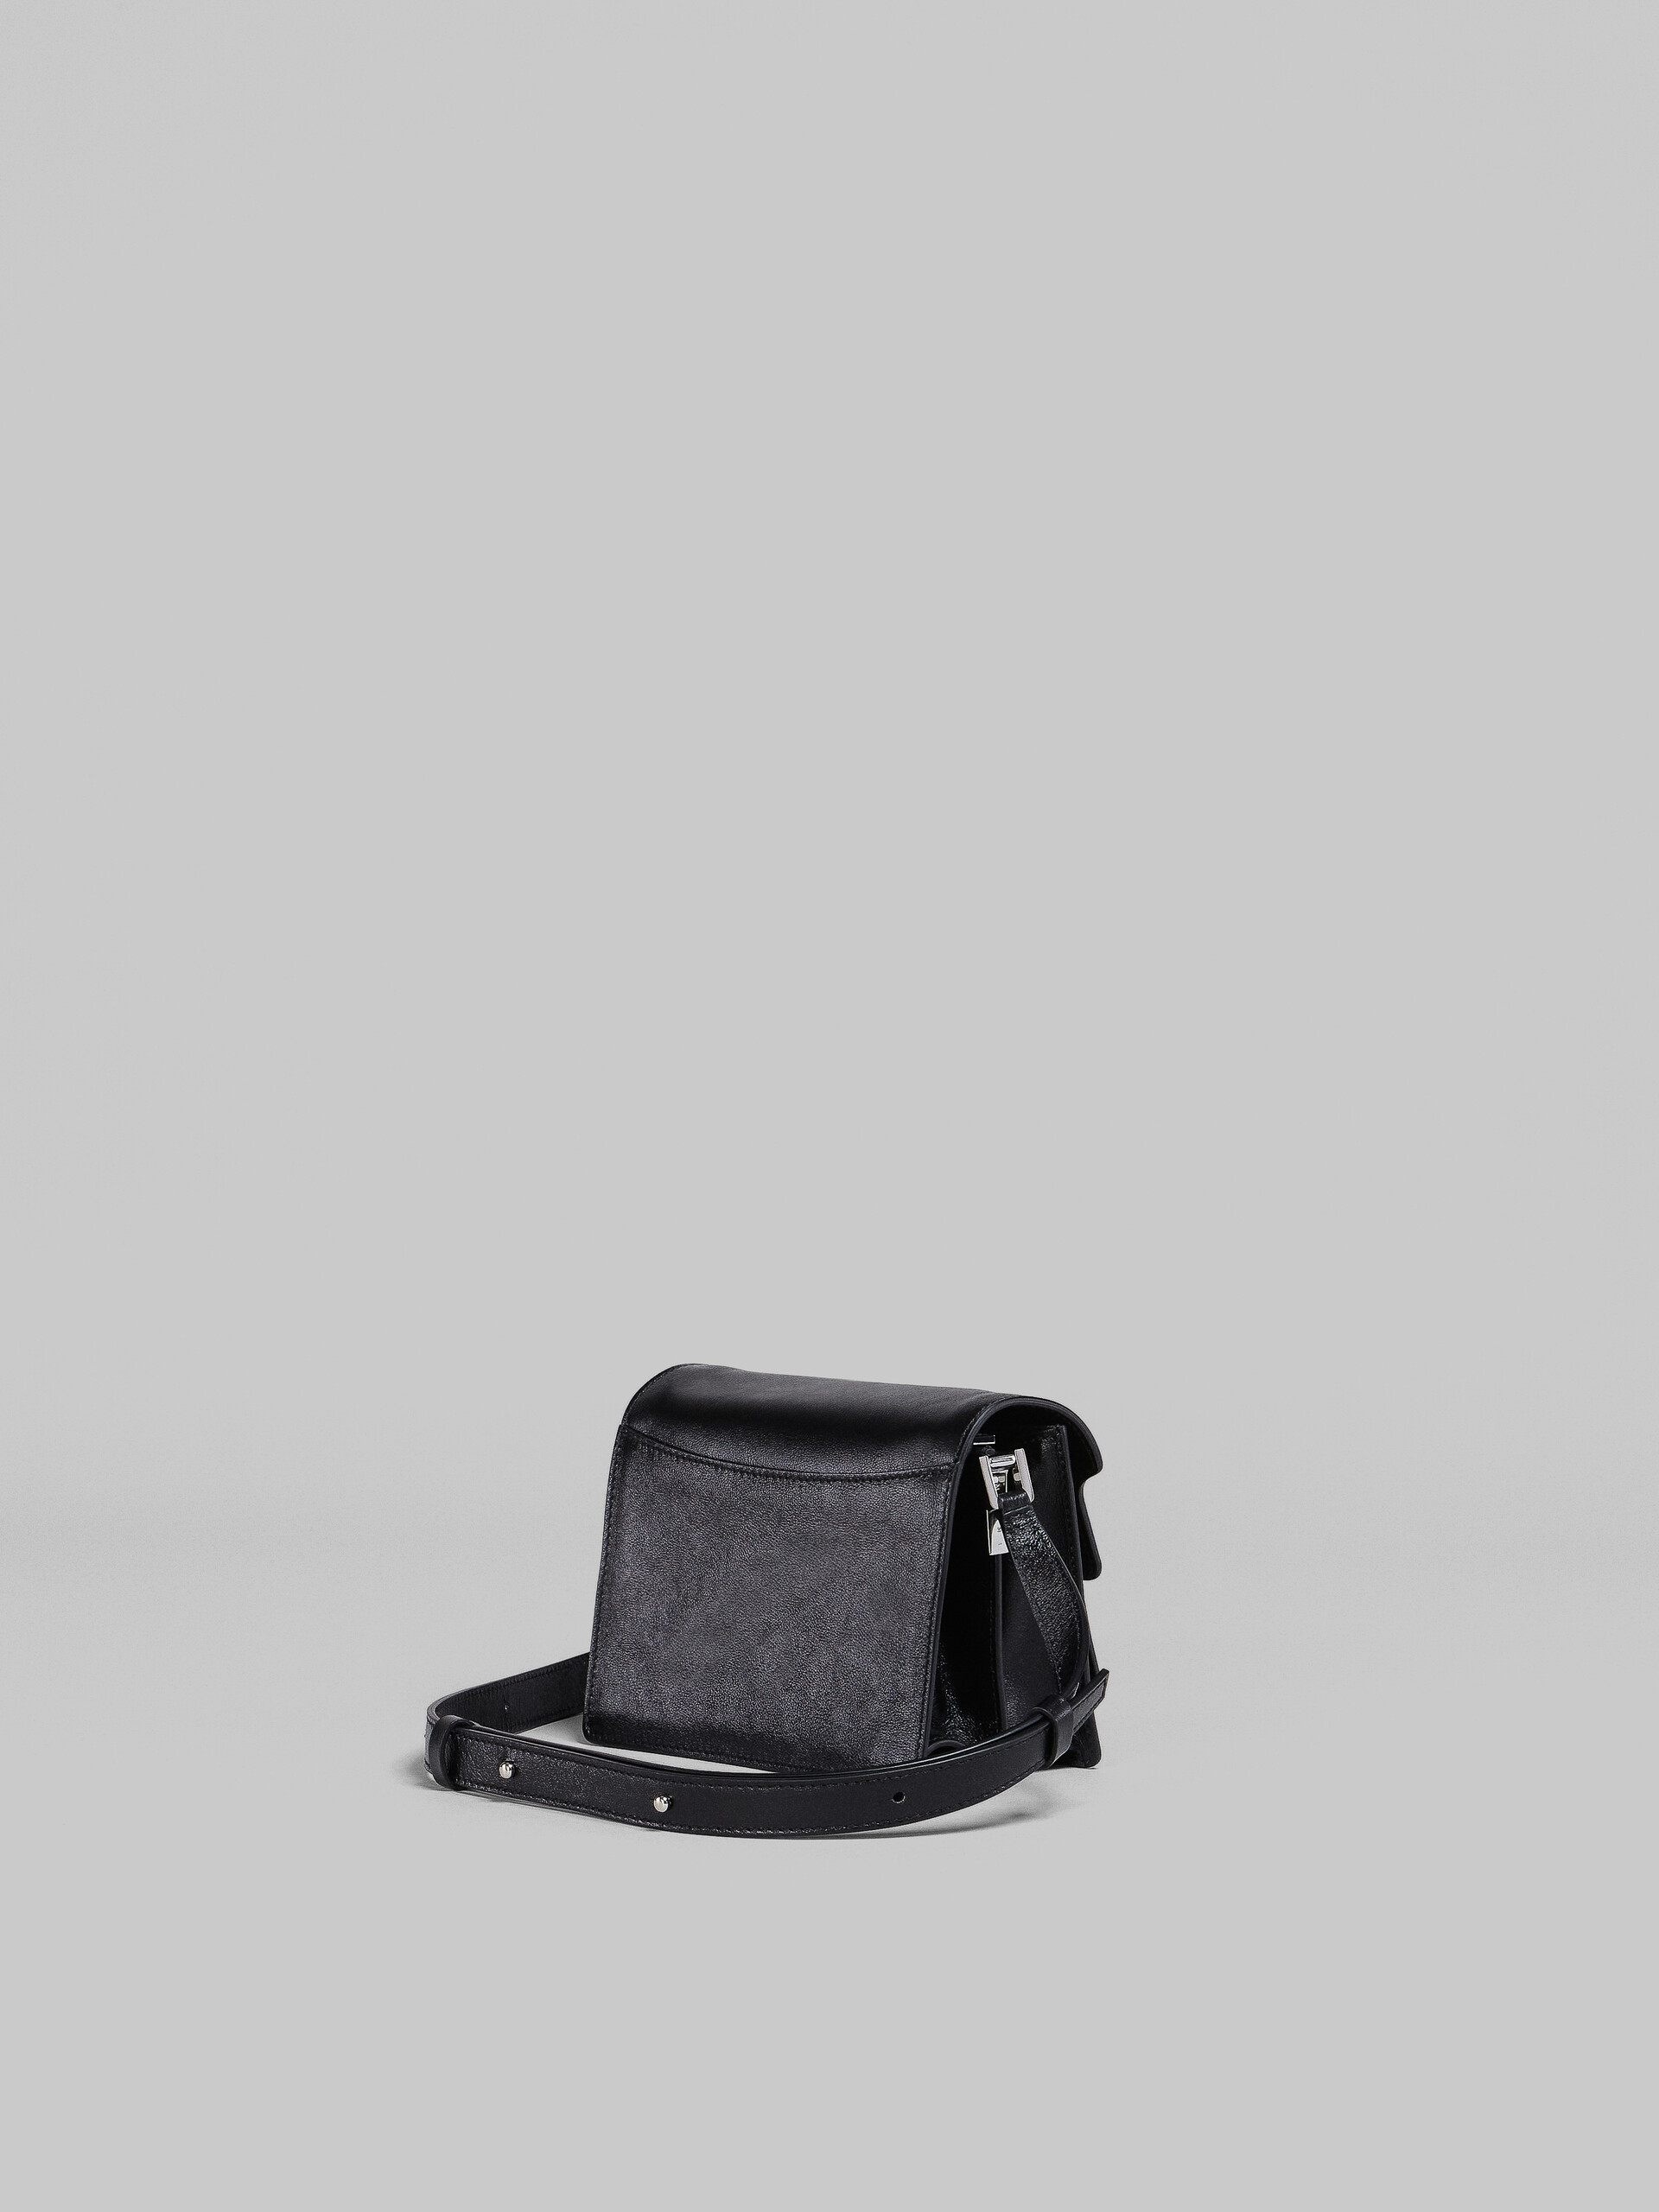 TRUNK SOFT bag mini in pelle nera - Borse a spalla - Image 2